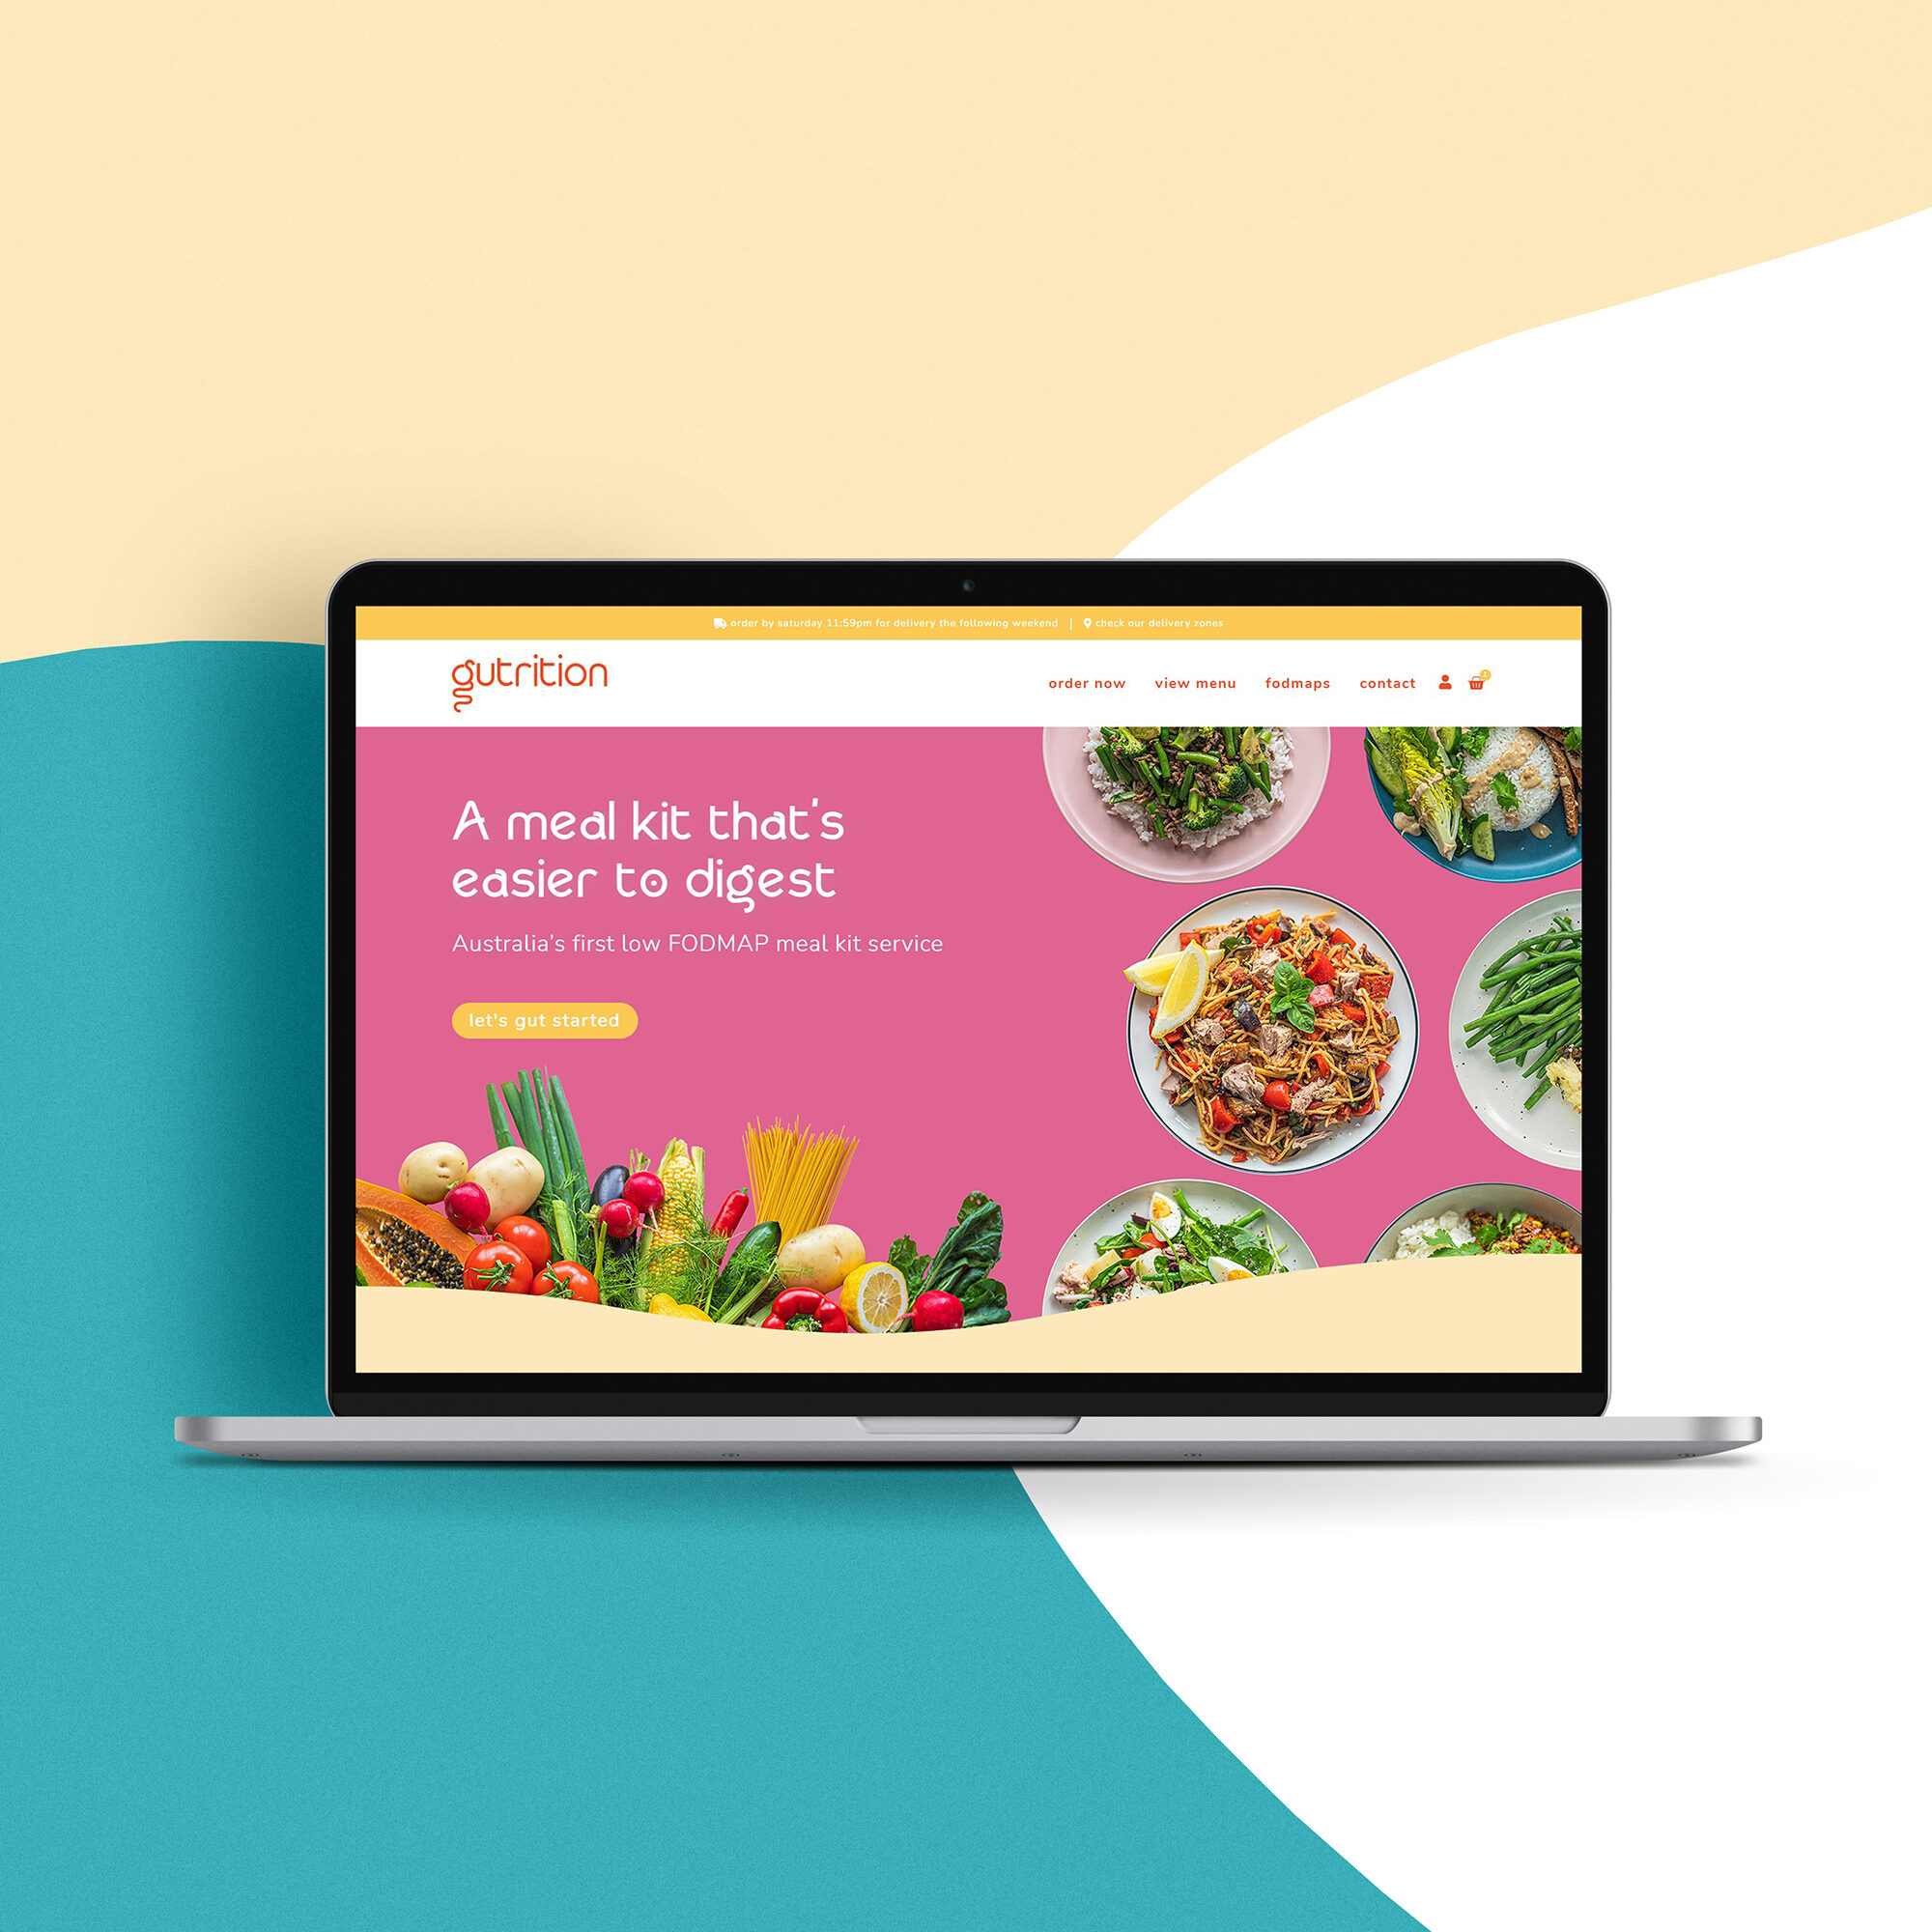 gutrition meal kit website design